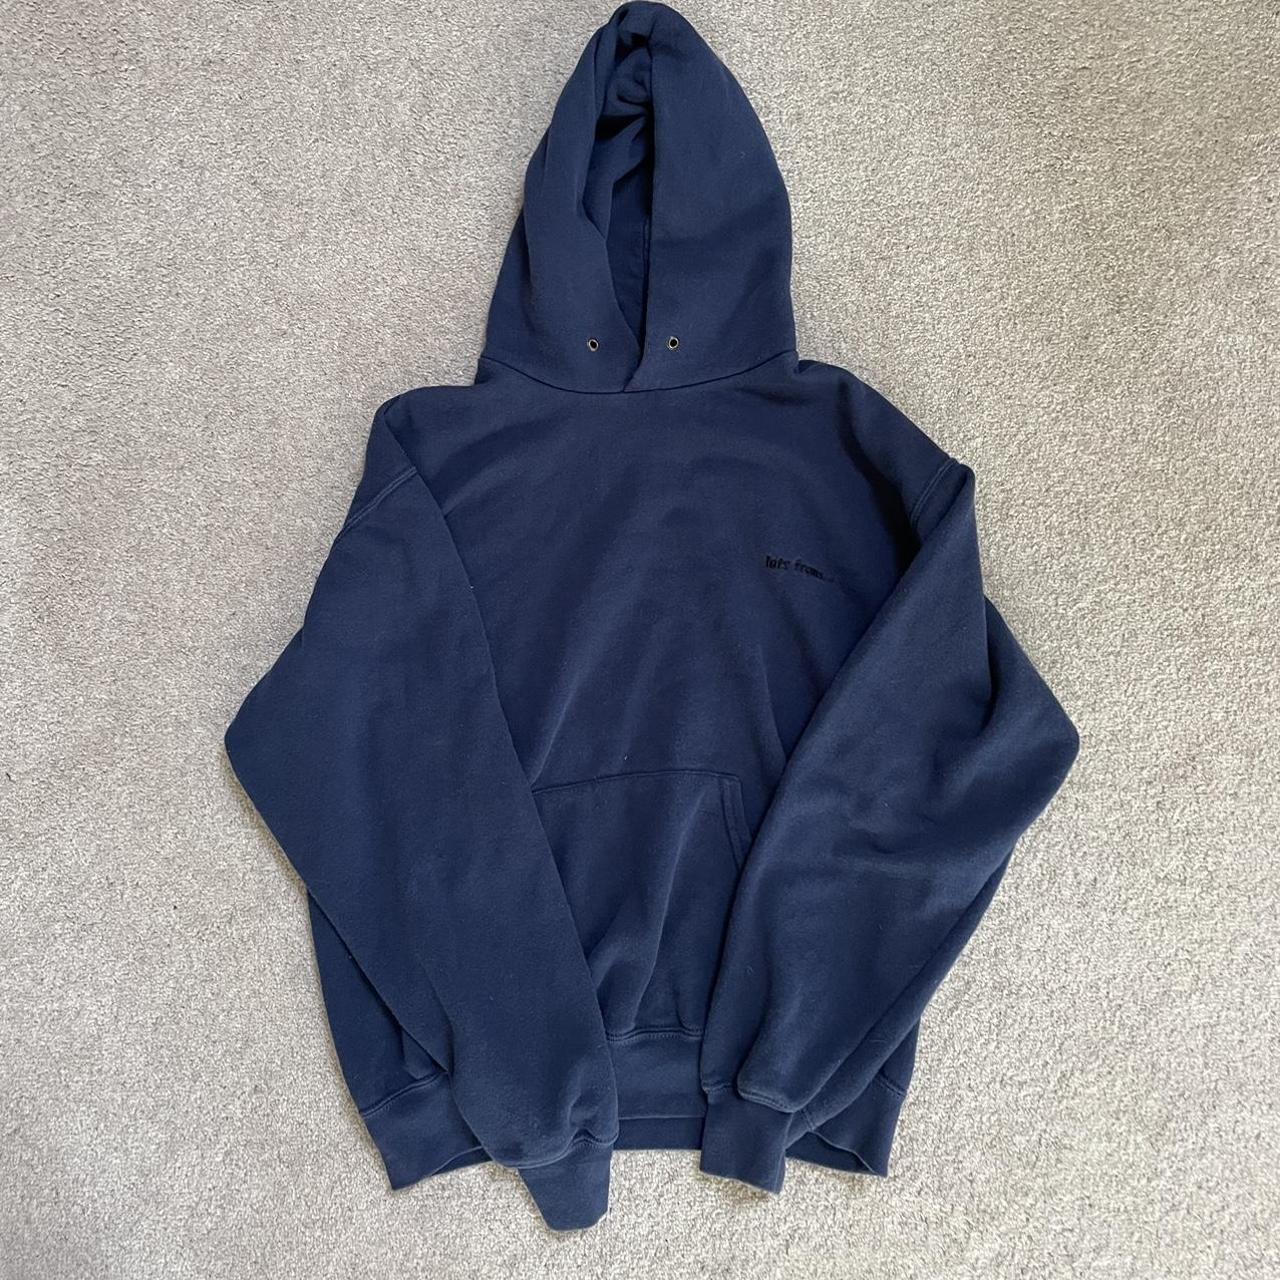 Navy IETS FRANS hoodie Size M #urbanhoodie #hoodie - Depop